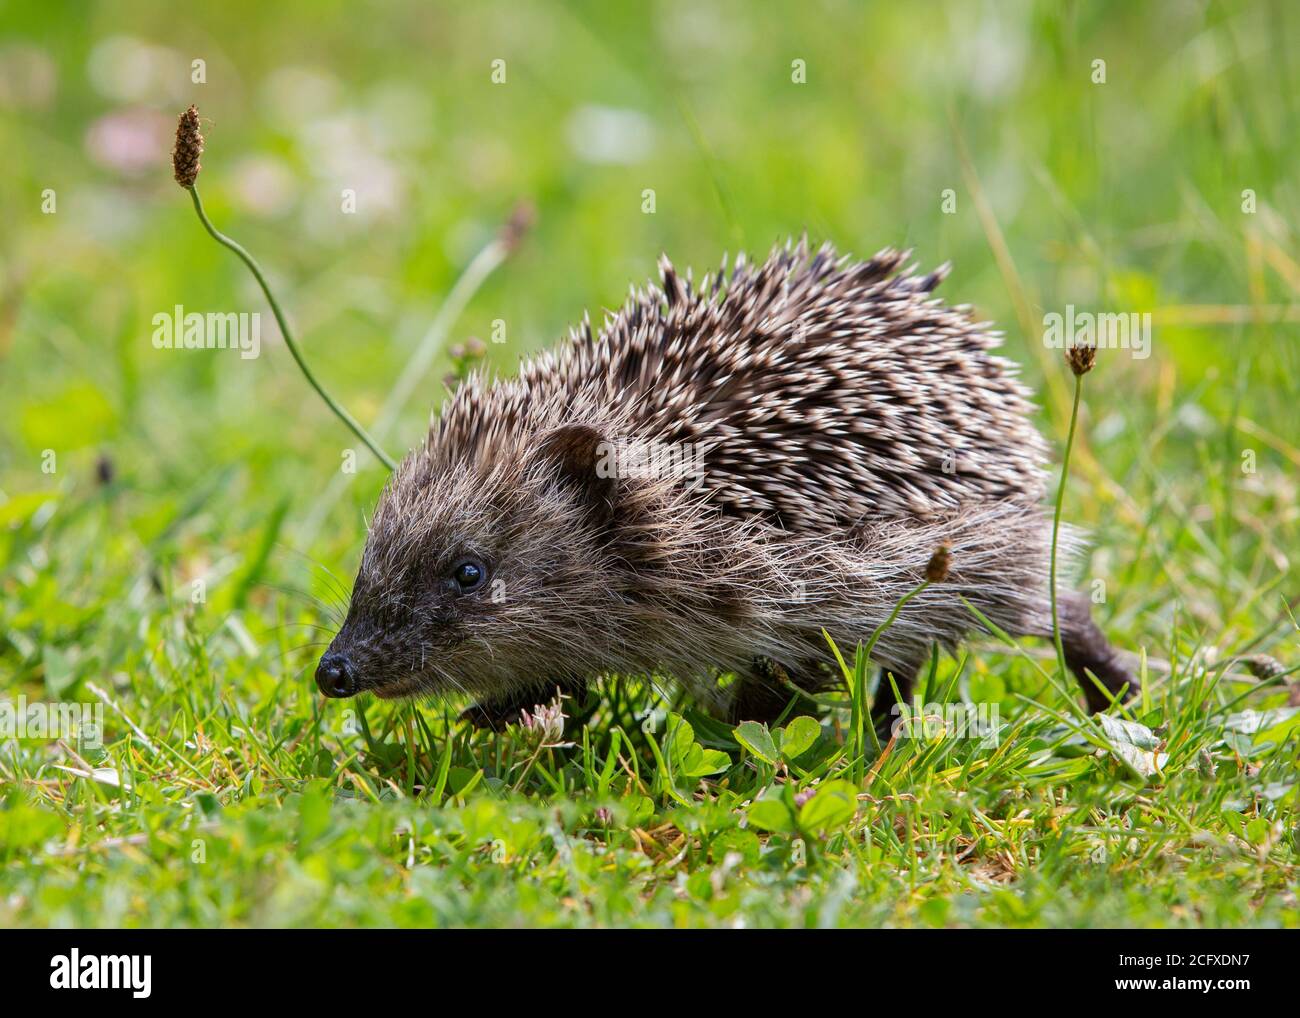 Lindo joven europeo Hedgehog (Erinaceus europaeus) caminando en la hierba. Foto de stock